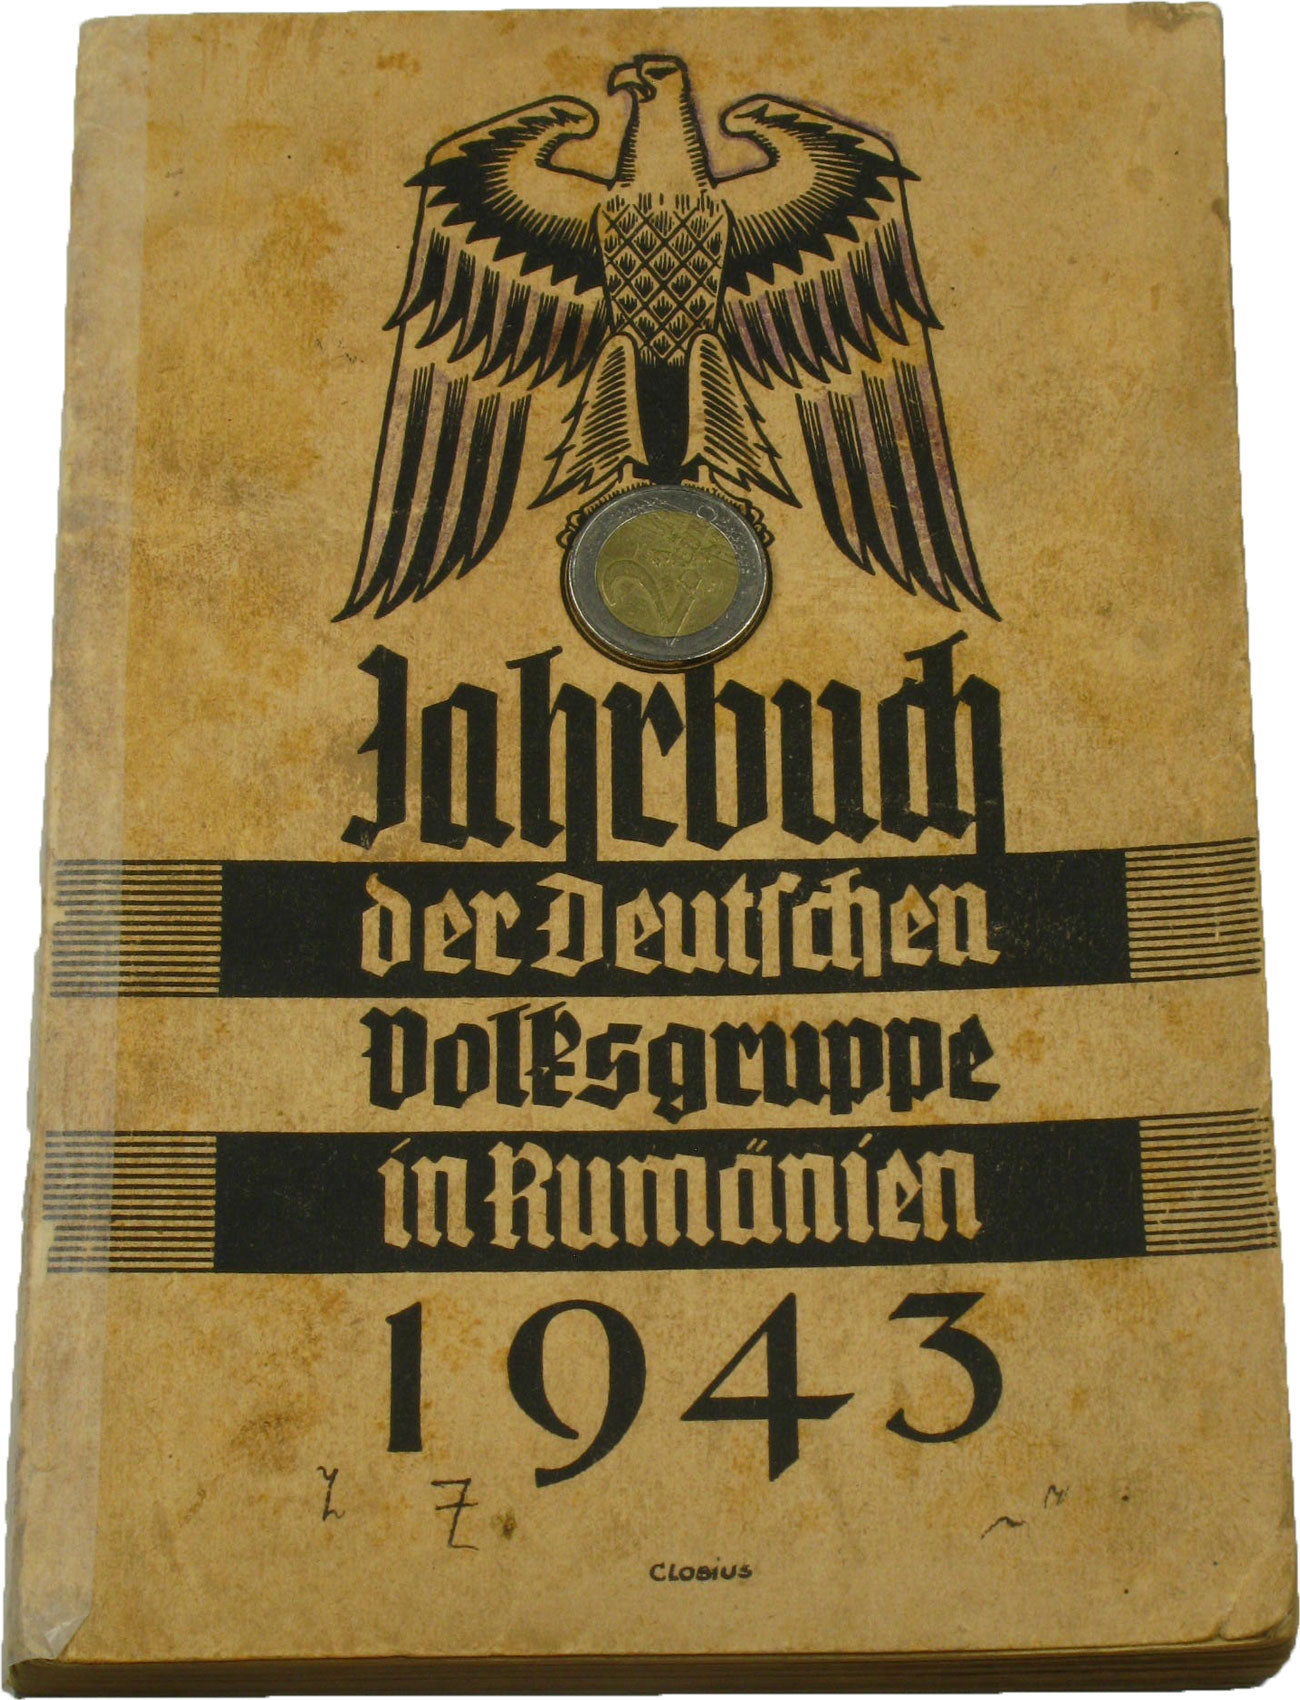   Jahrbuch der Deutschen Volksgruppe in Rumänien 1943 